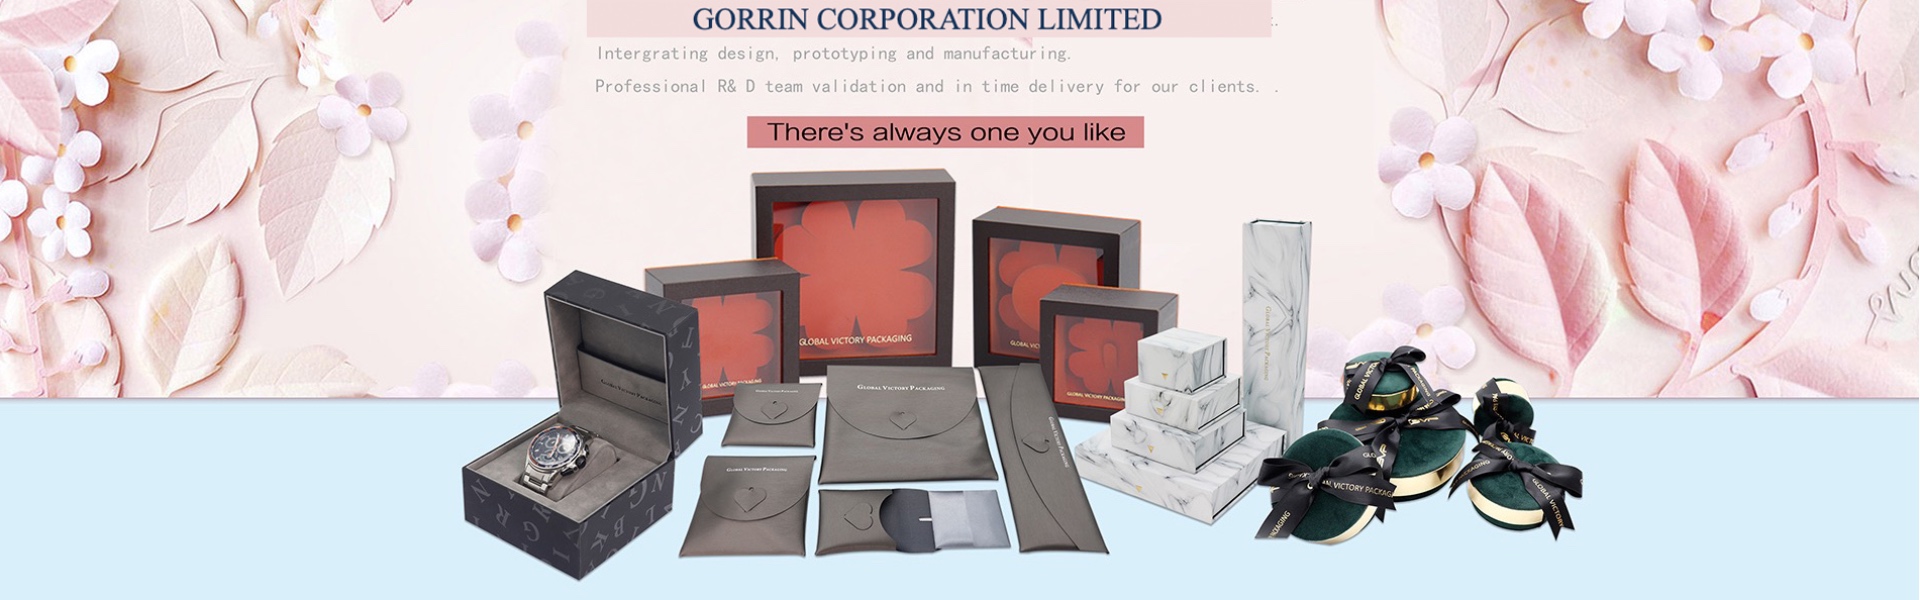 χάρτινο κουτί, κοσμήματα, κουτί κοσμημάτων.,Gorrin corporation limited